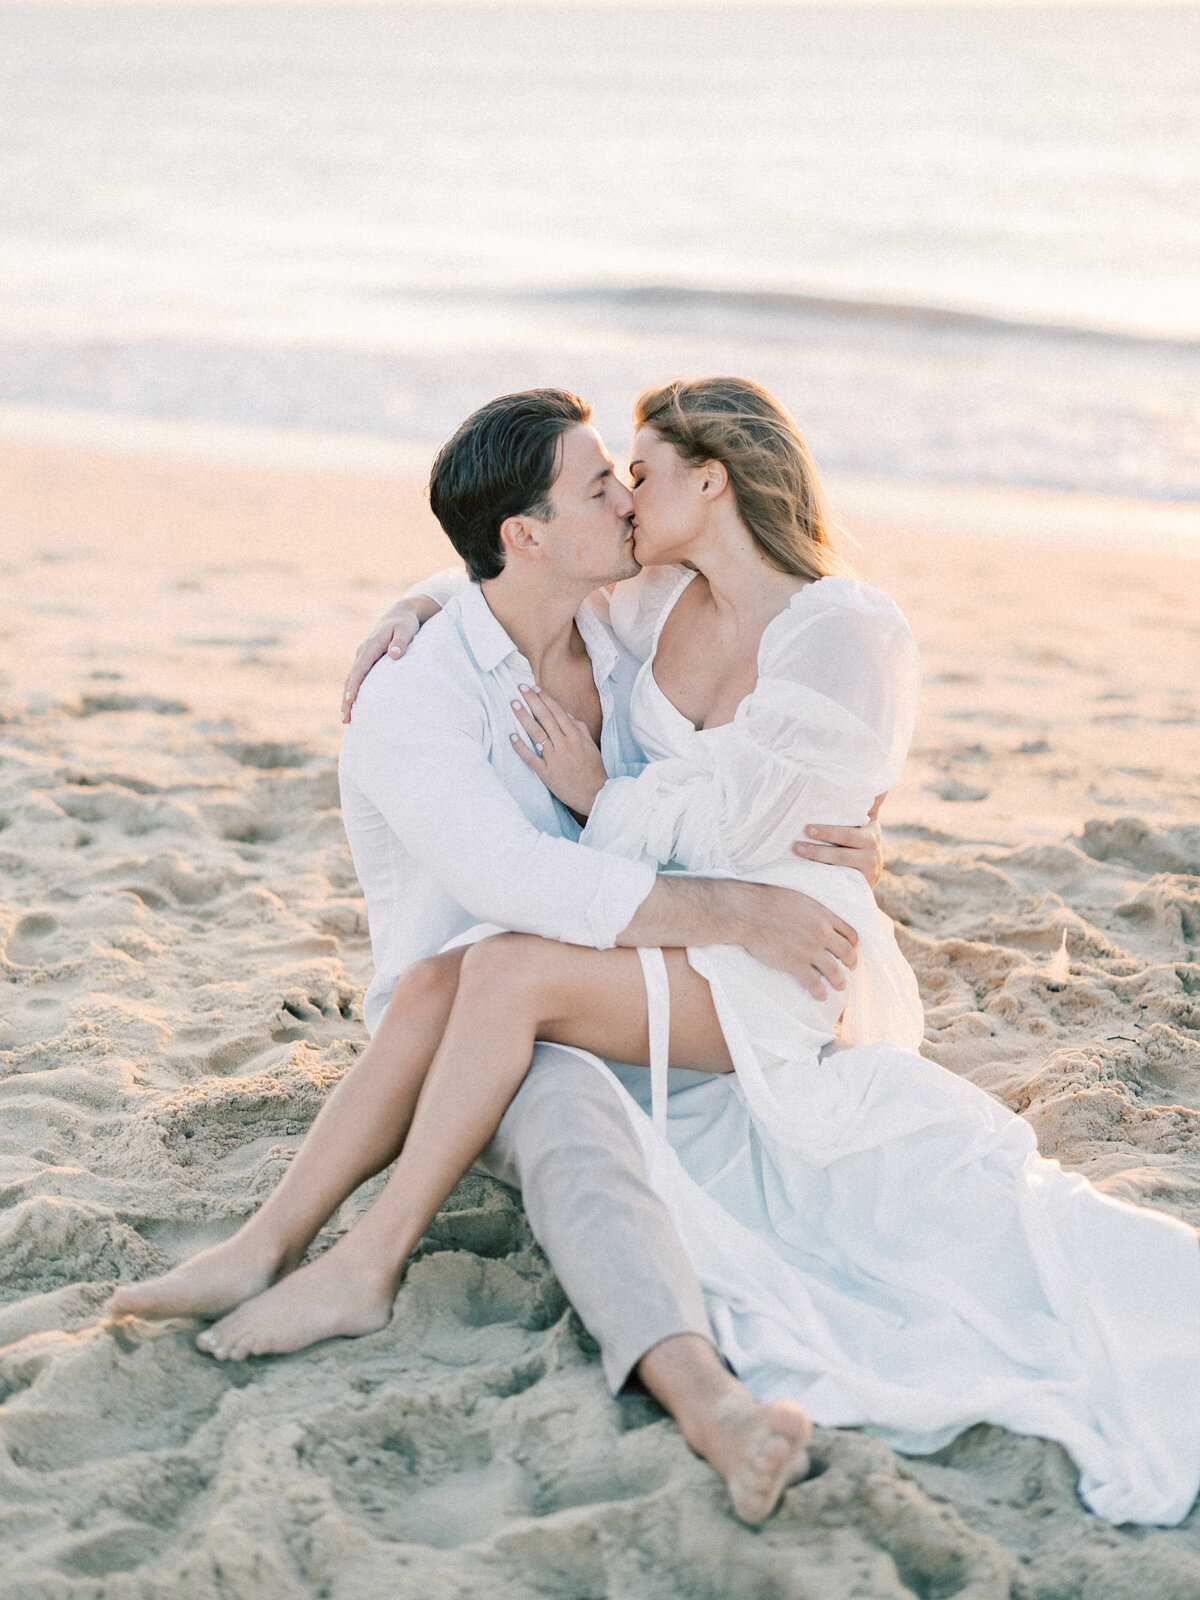 Washington DC Wedding Photographer Costola Photography - Virginia Beach Sunrise Engagement Session _ Hannah & David 38